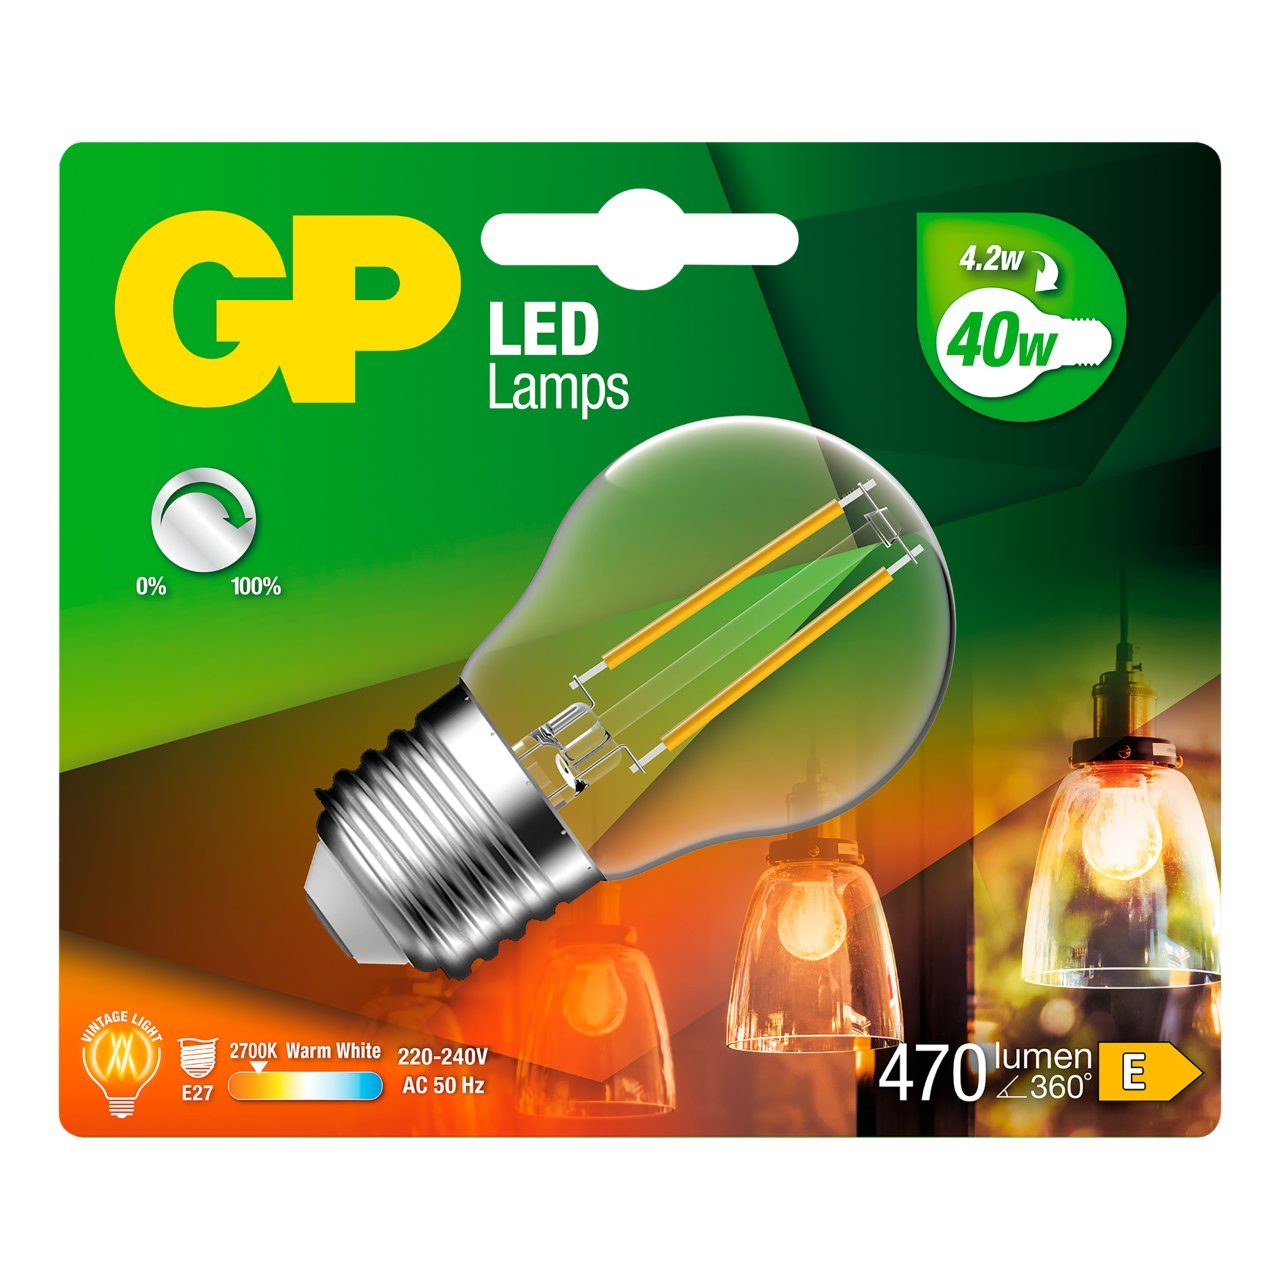 Led lamp GP 078197 E27 globe